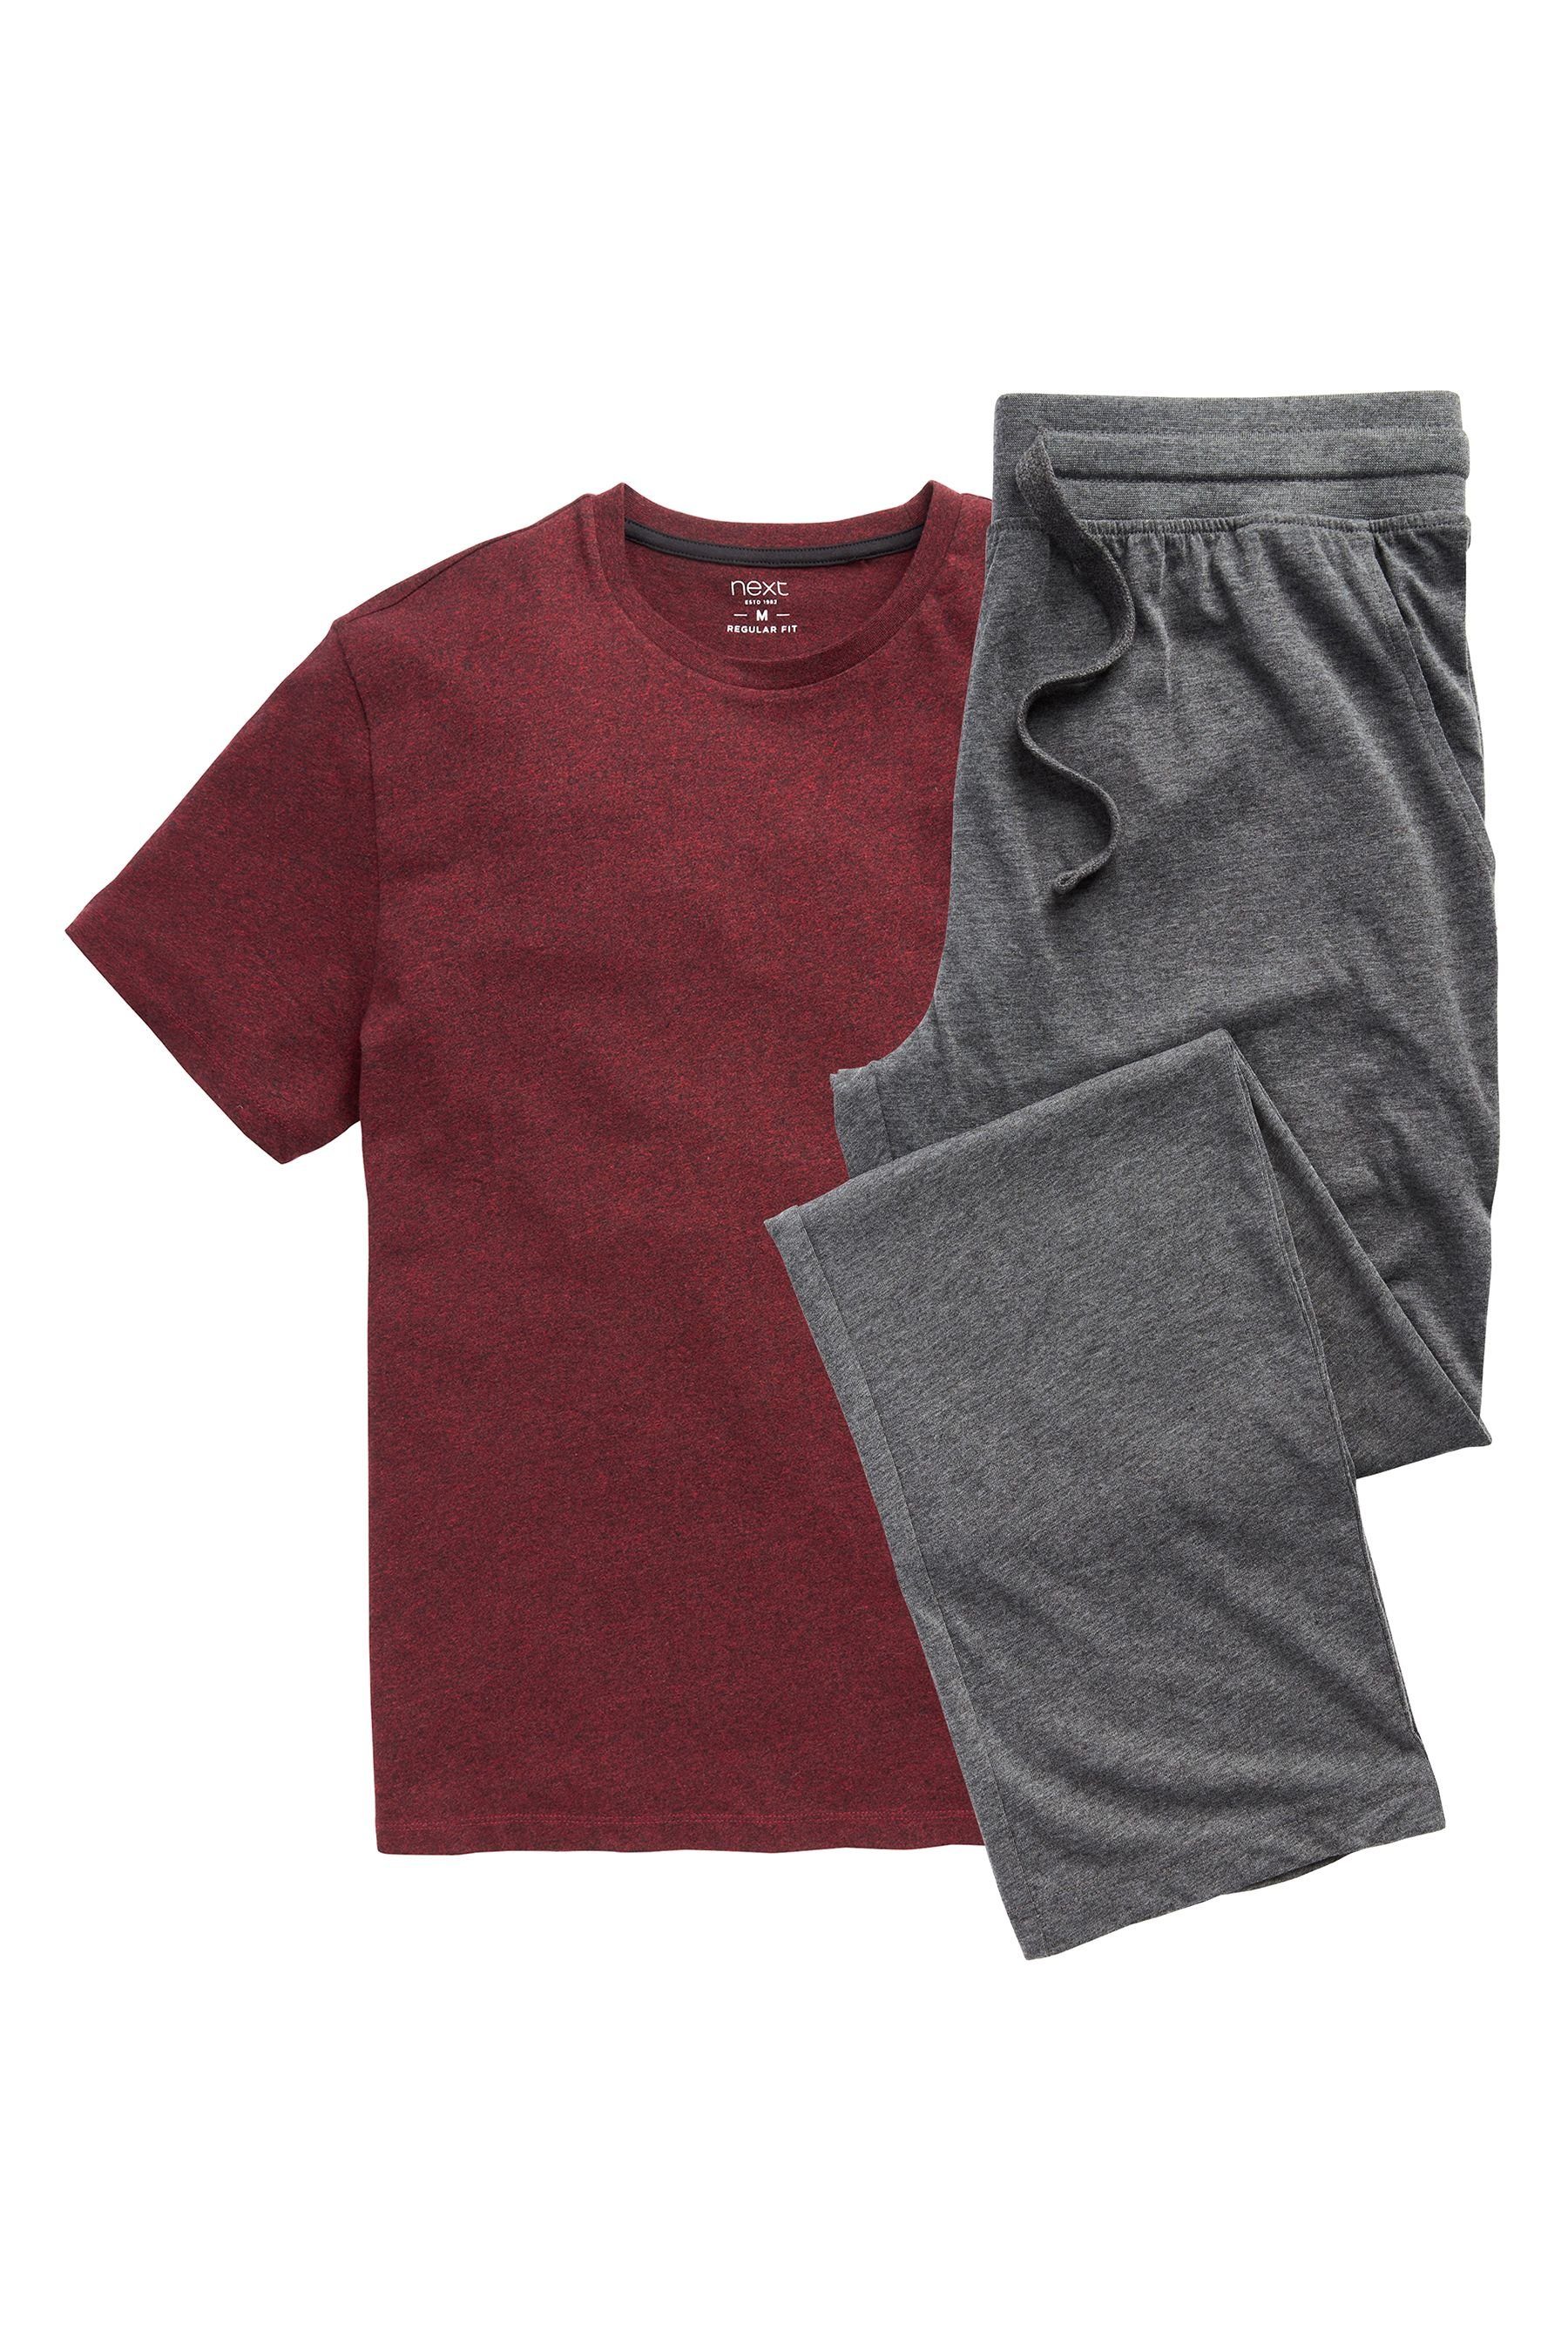 Red/Charcoal Dark (2 tlg) Grey Pyjama Next